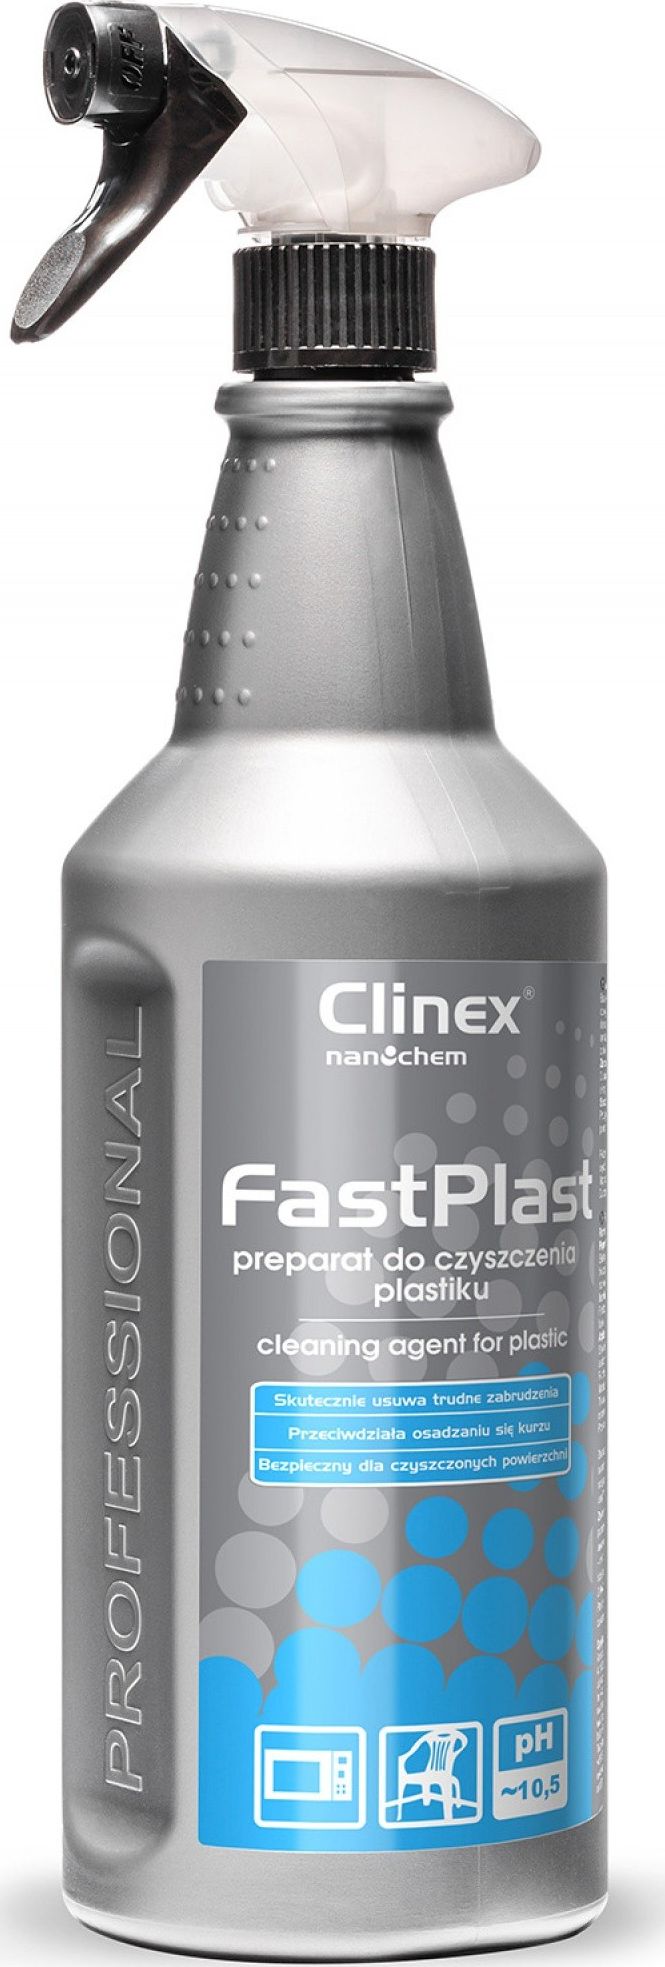 Clinex Preparat do czyszczenia plastiku FastPlast 1L 77-695 (5907513273707) Sadzīves ķīmija